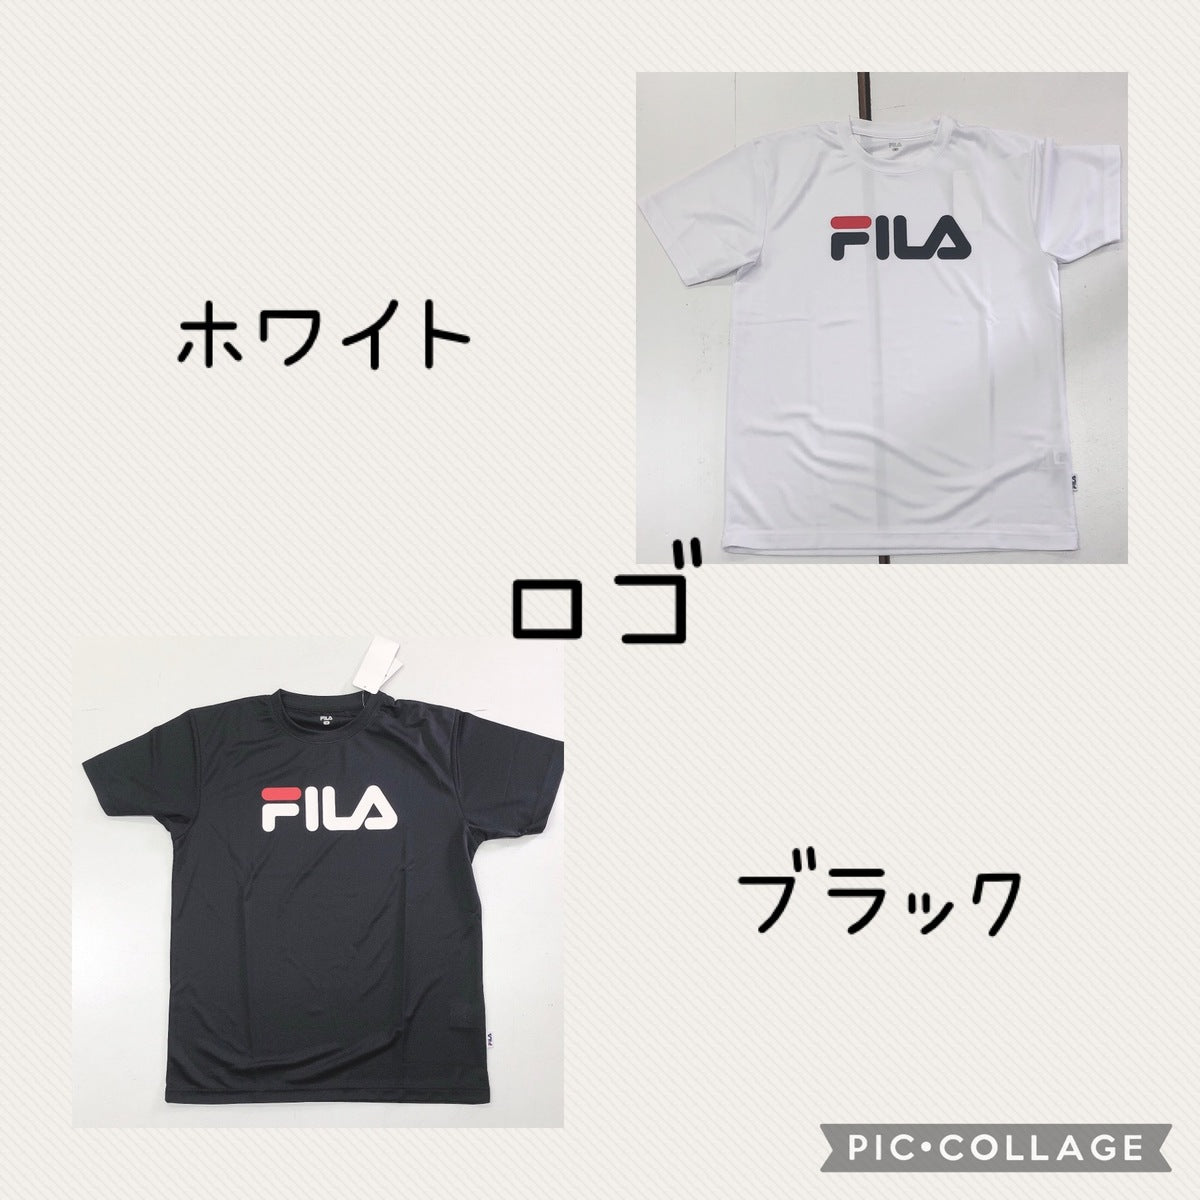 【FILA】 Tシャツ スポーツウェア Mサイズ ネイビー ブラック DRY ドライ加工生地 夏